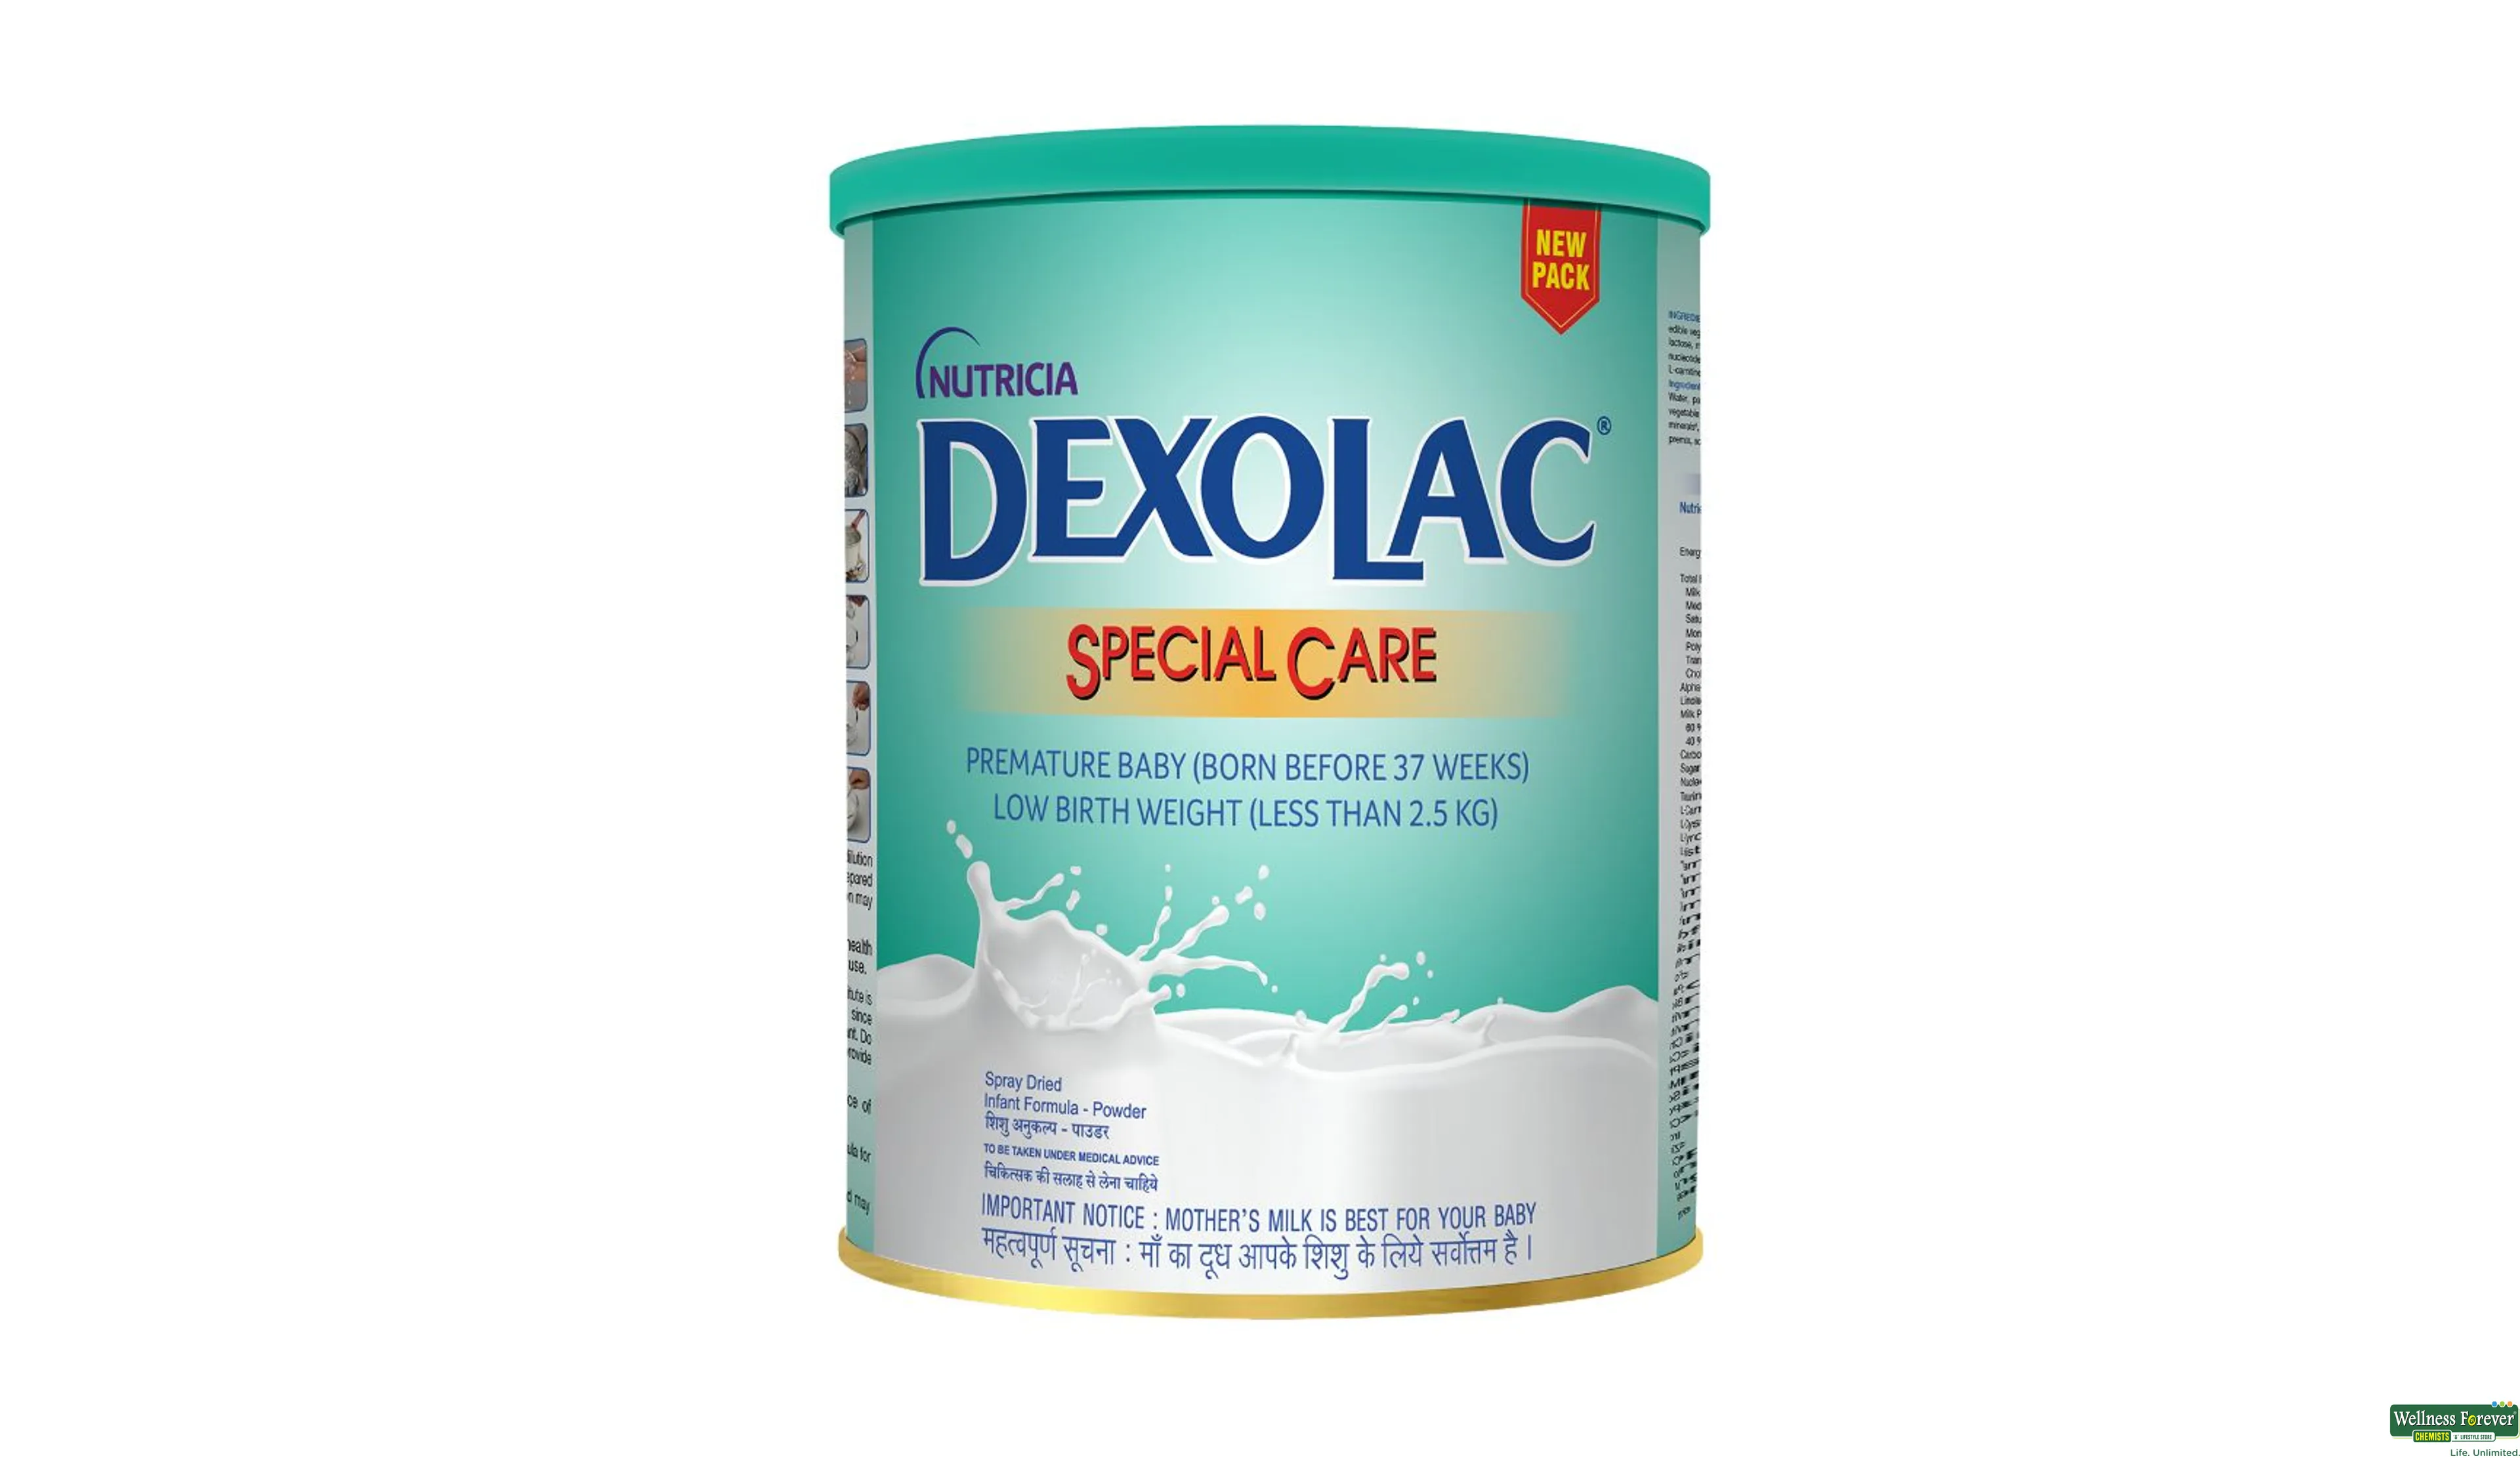 DEXOLAC-SPECIAL CARE POW 400GM- 1, 400GM, 